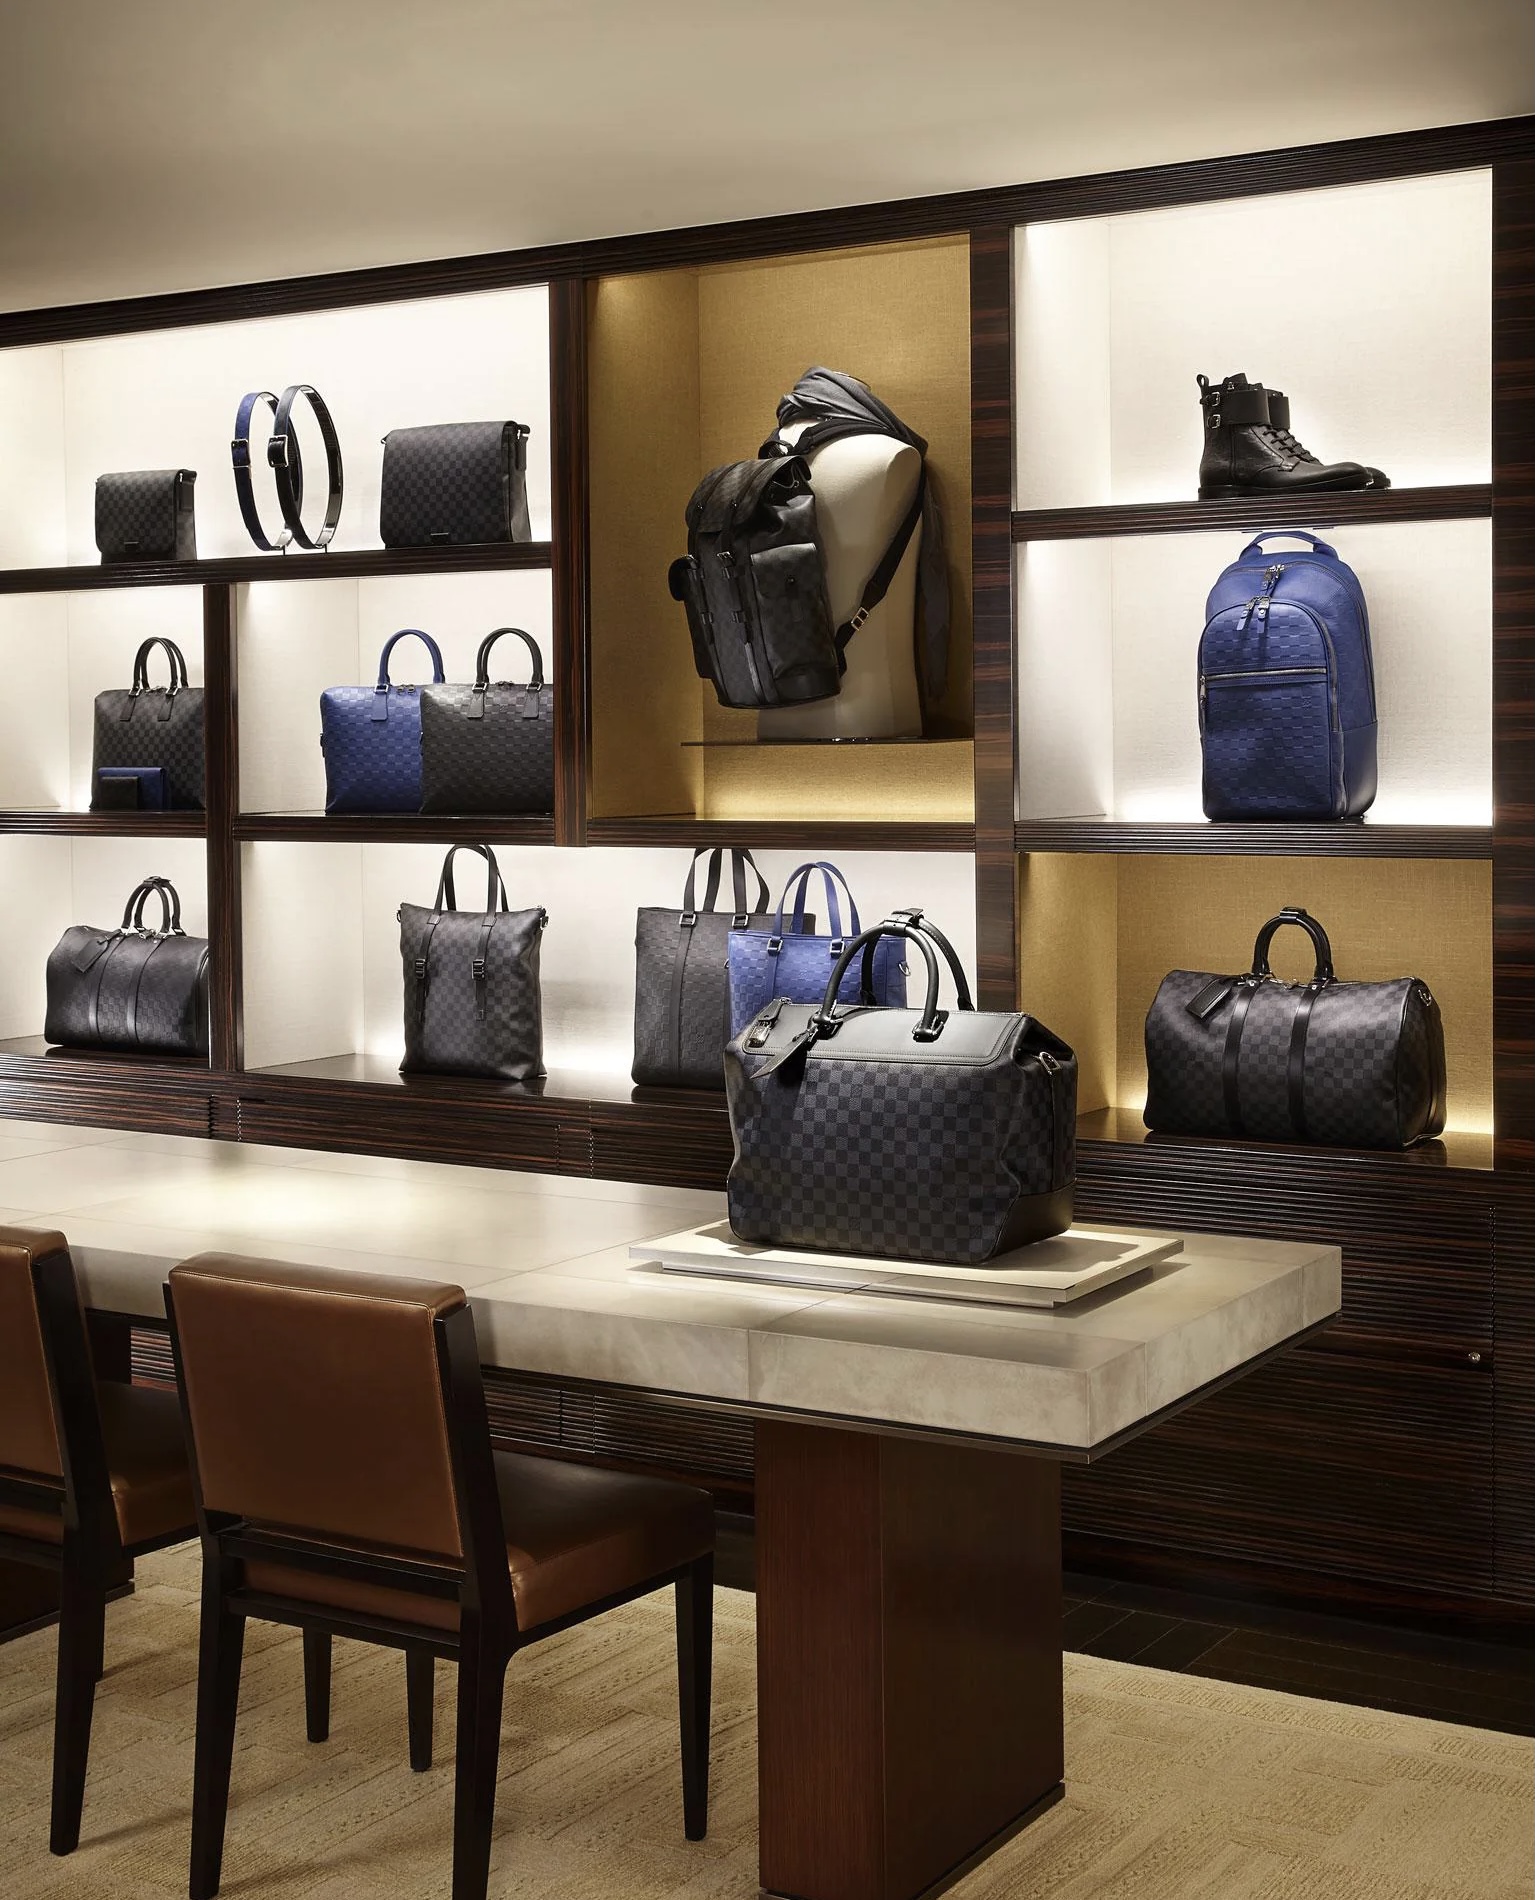 Louis Vuitton LV Handbag Leather Black Men  Watches Prime